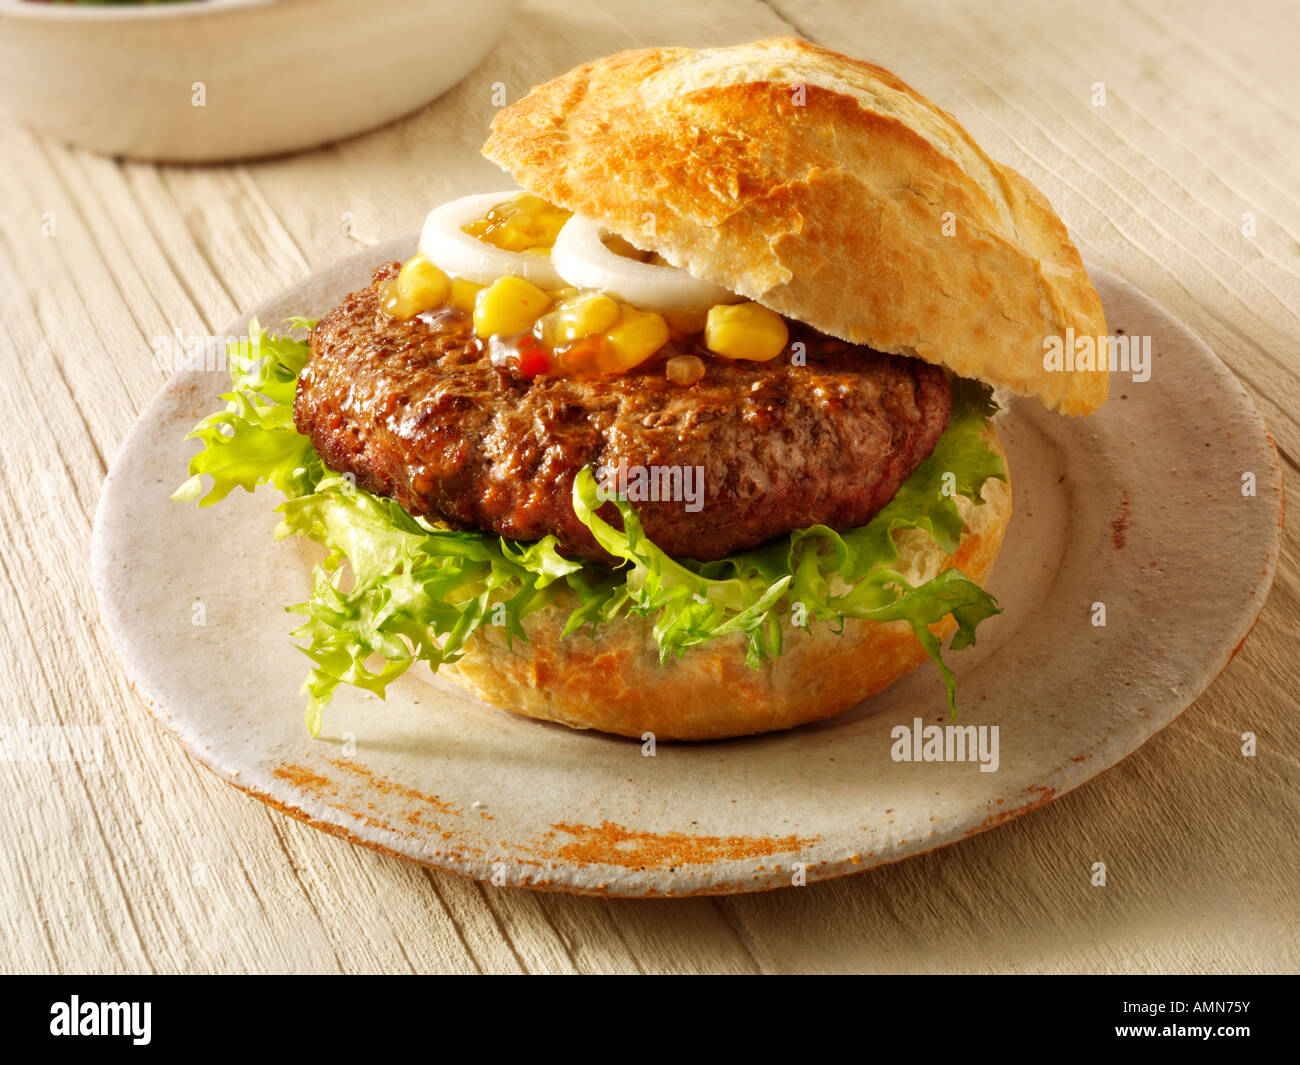 Burger fait maison dans un rouleau croustillant avec relish de maïs et omion Banque D'Images